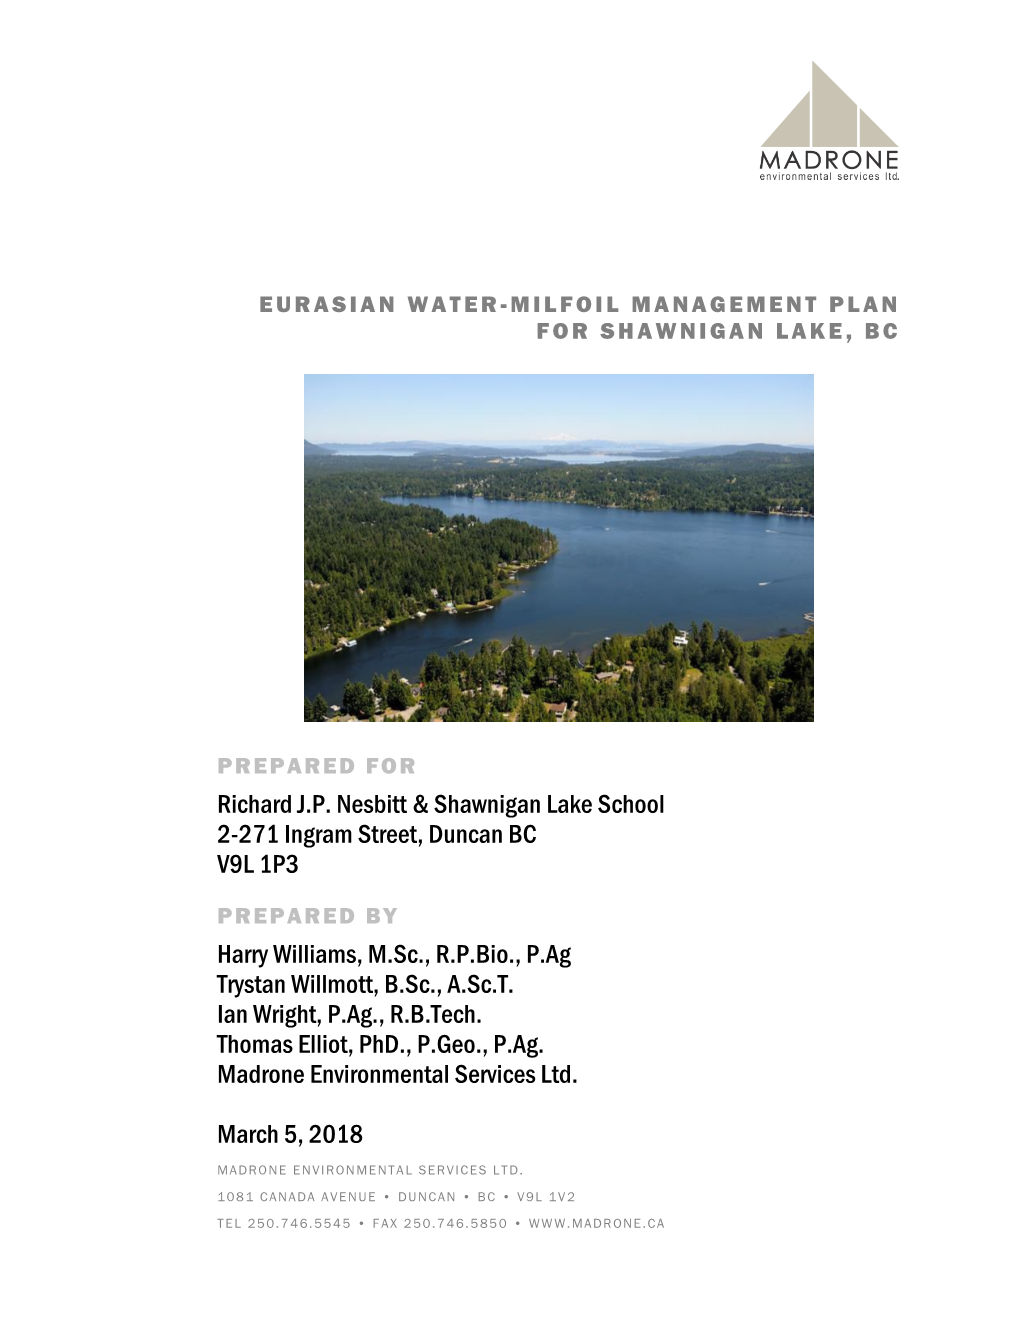 Eurasian Water-Milfoil Management Plan for Shawnigan Lake, Bc